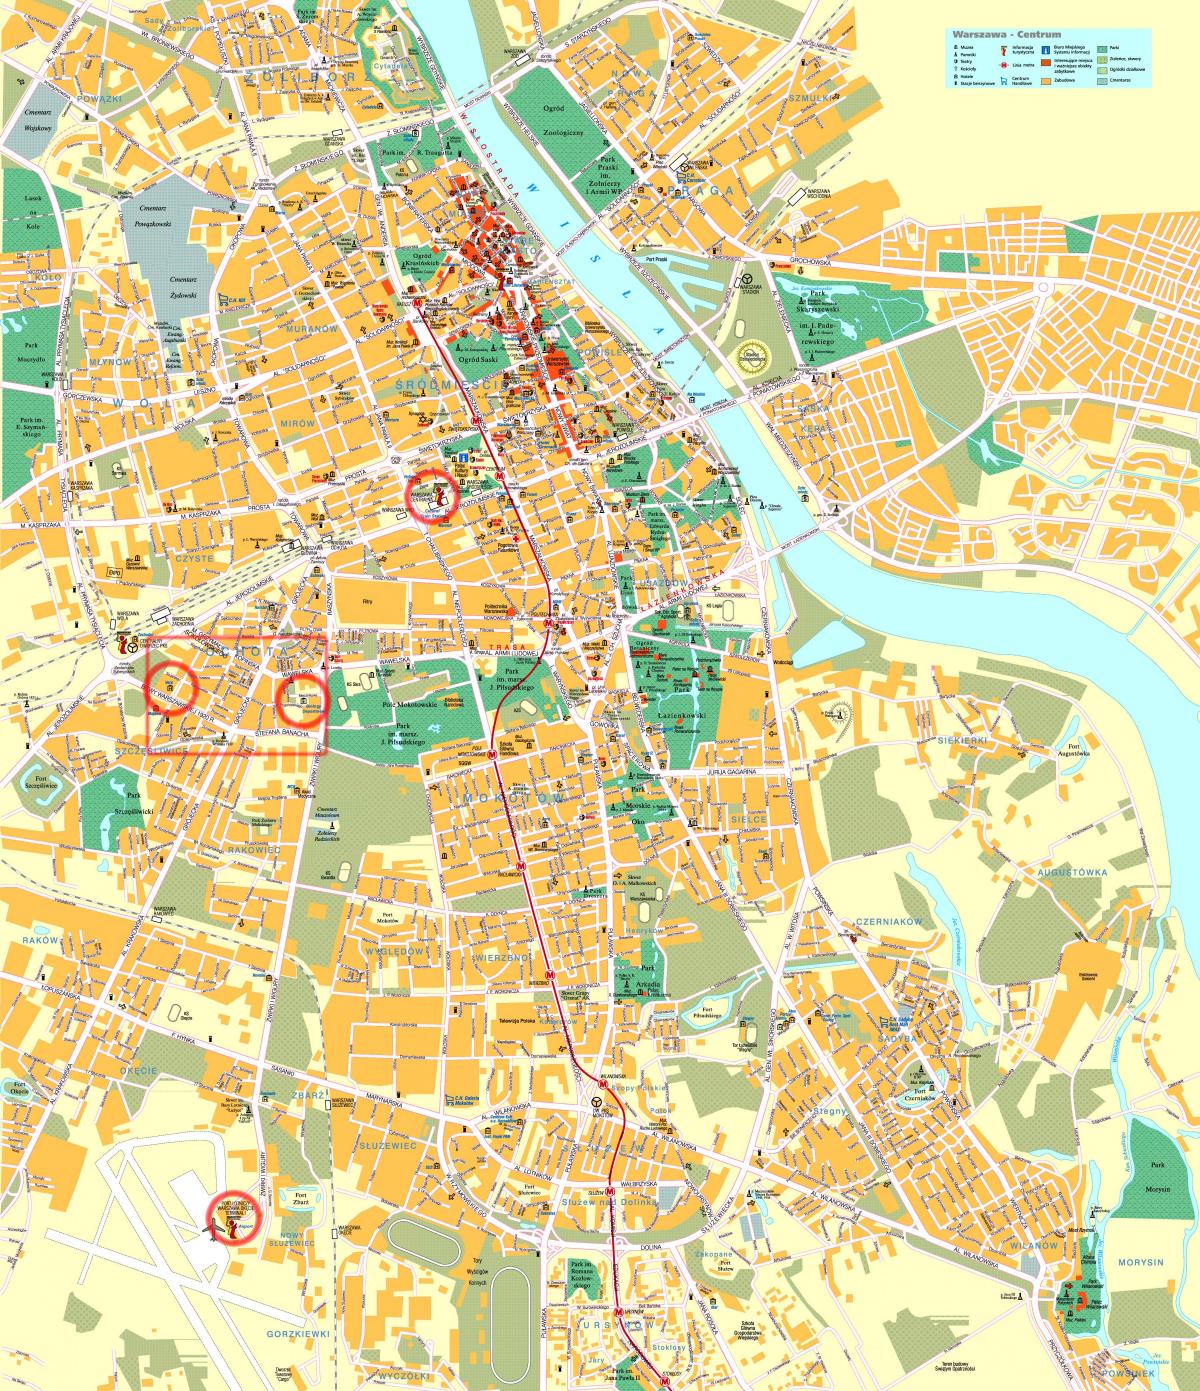 سڑک کے نقشے وارسا شہر کے مرکز